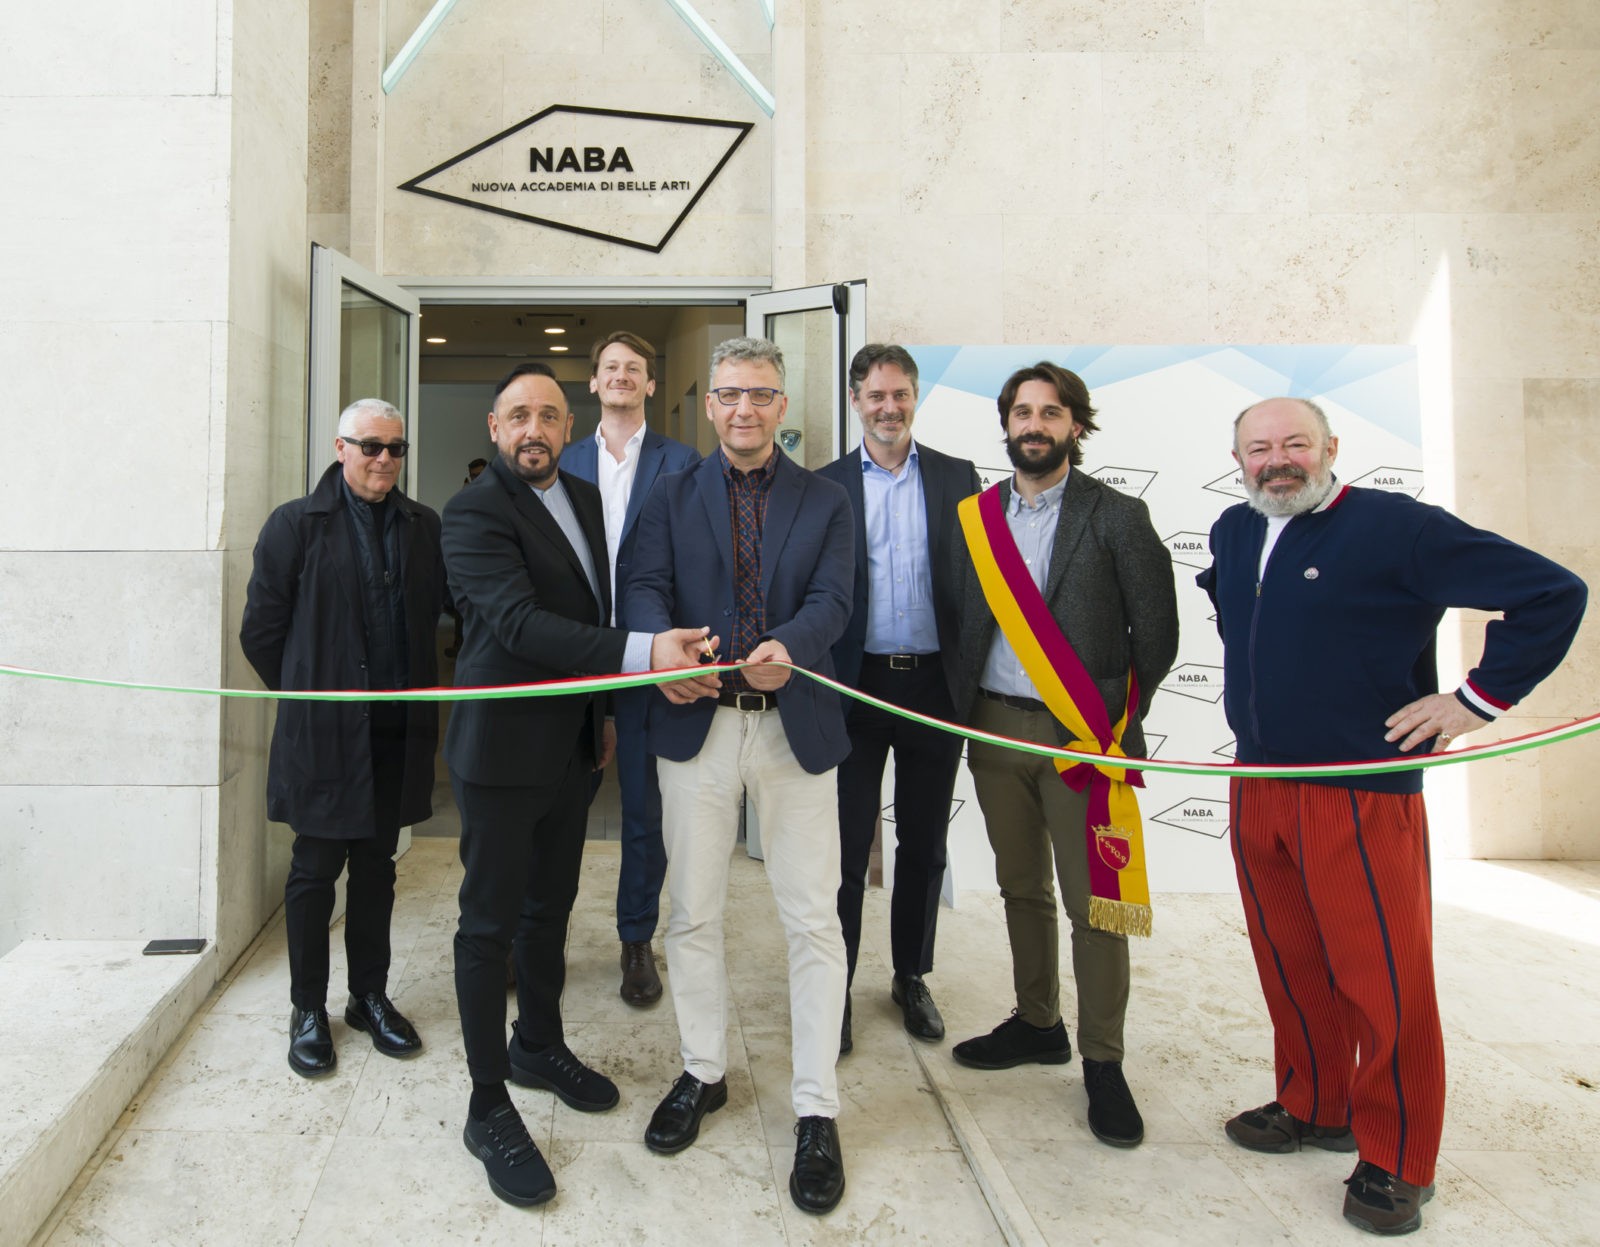 Академия изящных искусств NABA открыла кампус в Риме